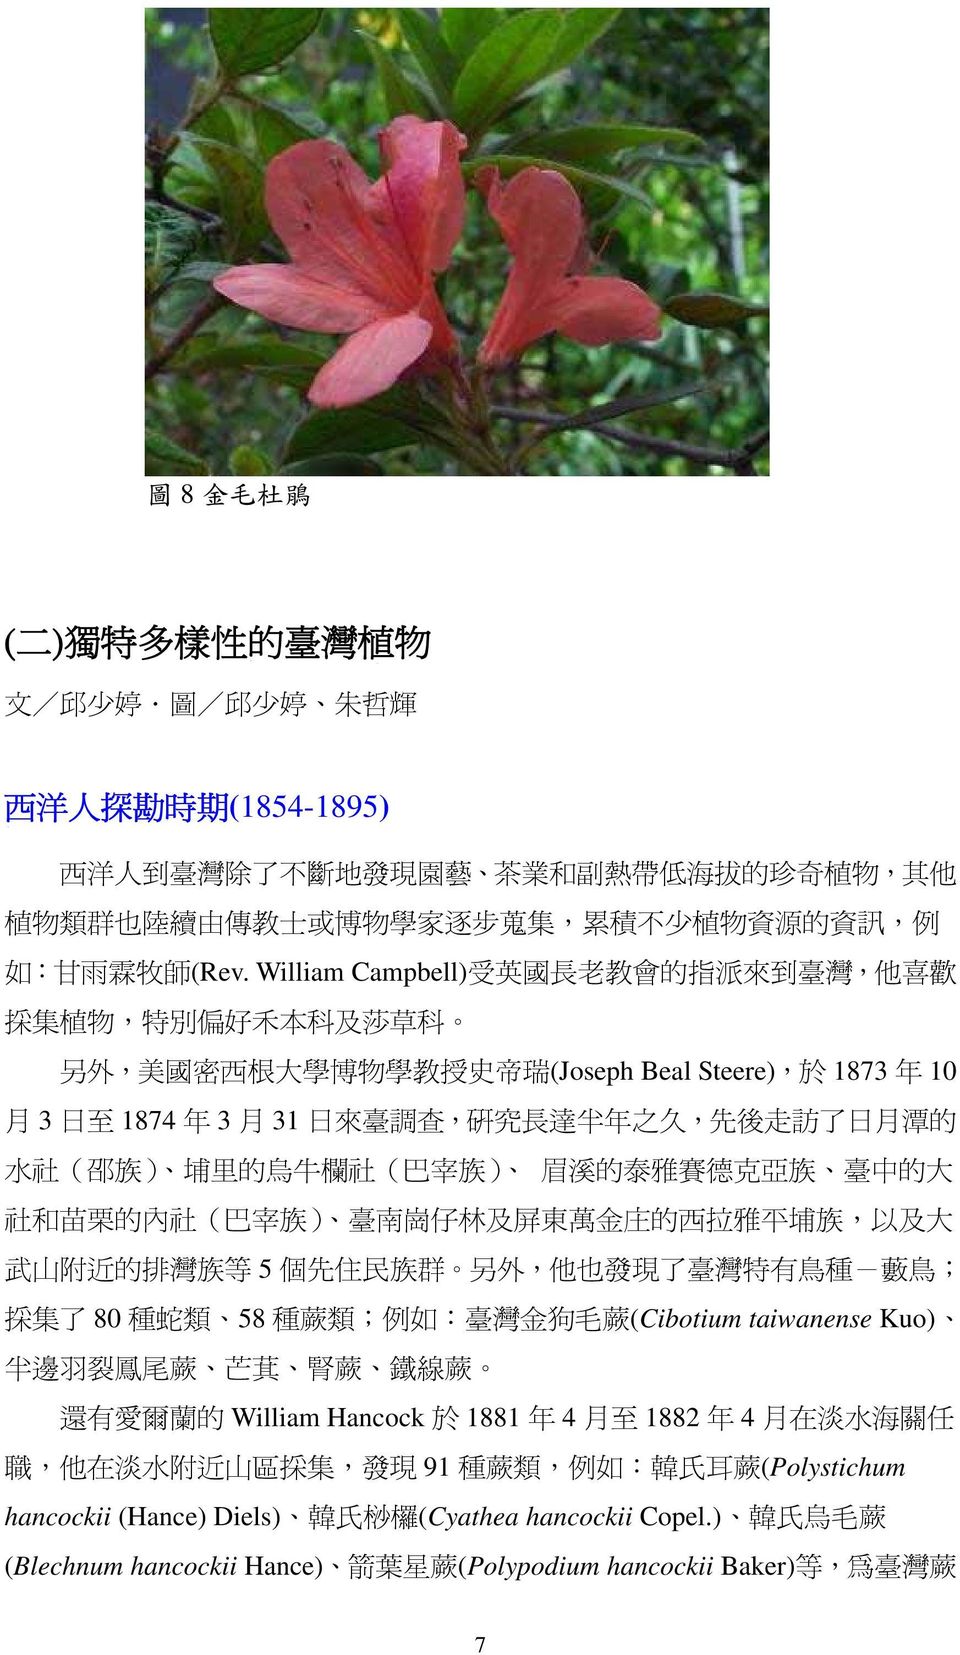 5 了 了 80 類 58 類 例 金 (Cibotium taiwanense Kuo) 裂 蘭 William Hancock 1881 年 4 1882 年 4